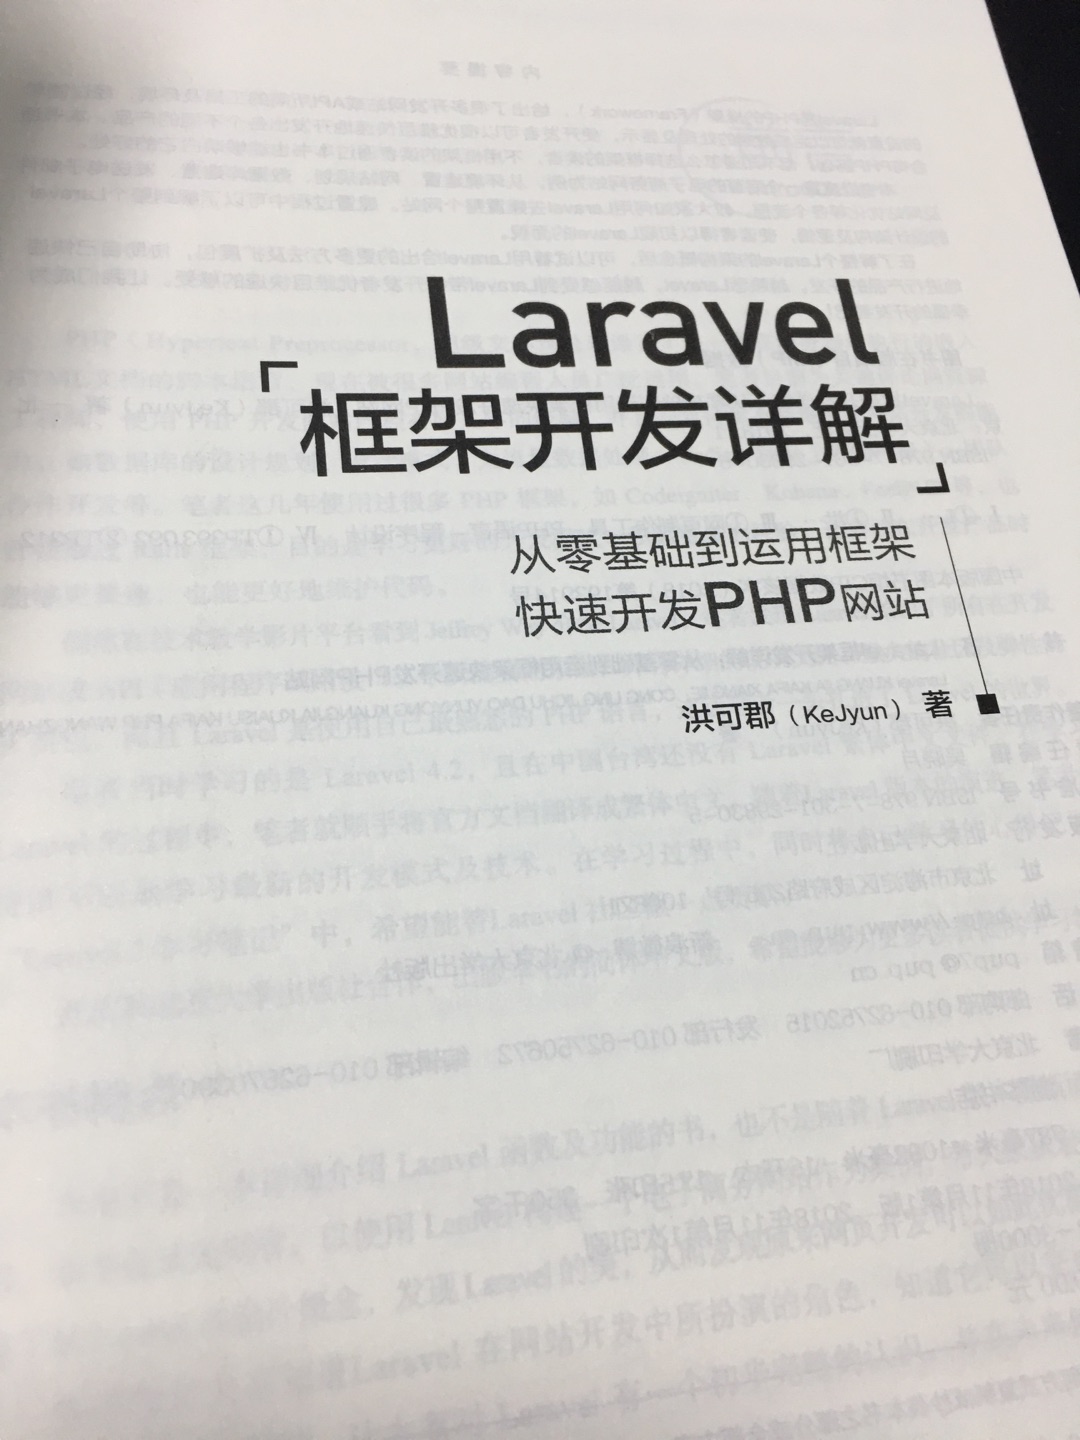 台湾的laravel社区很活跃，作者也听说过，很出名！他的作品，值得一看